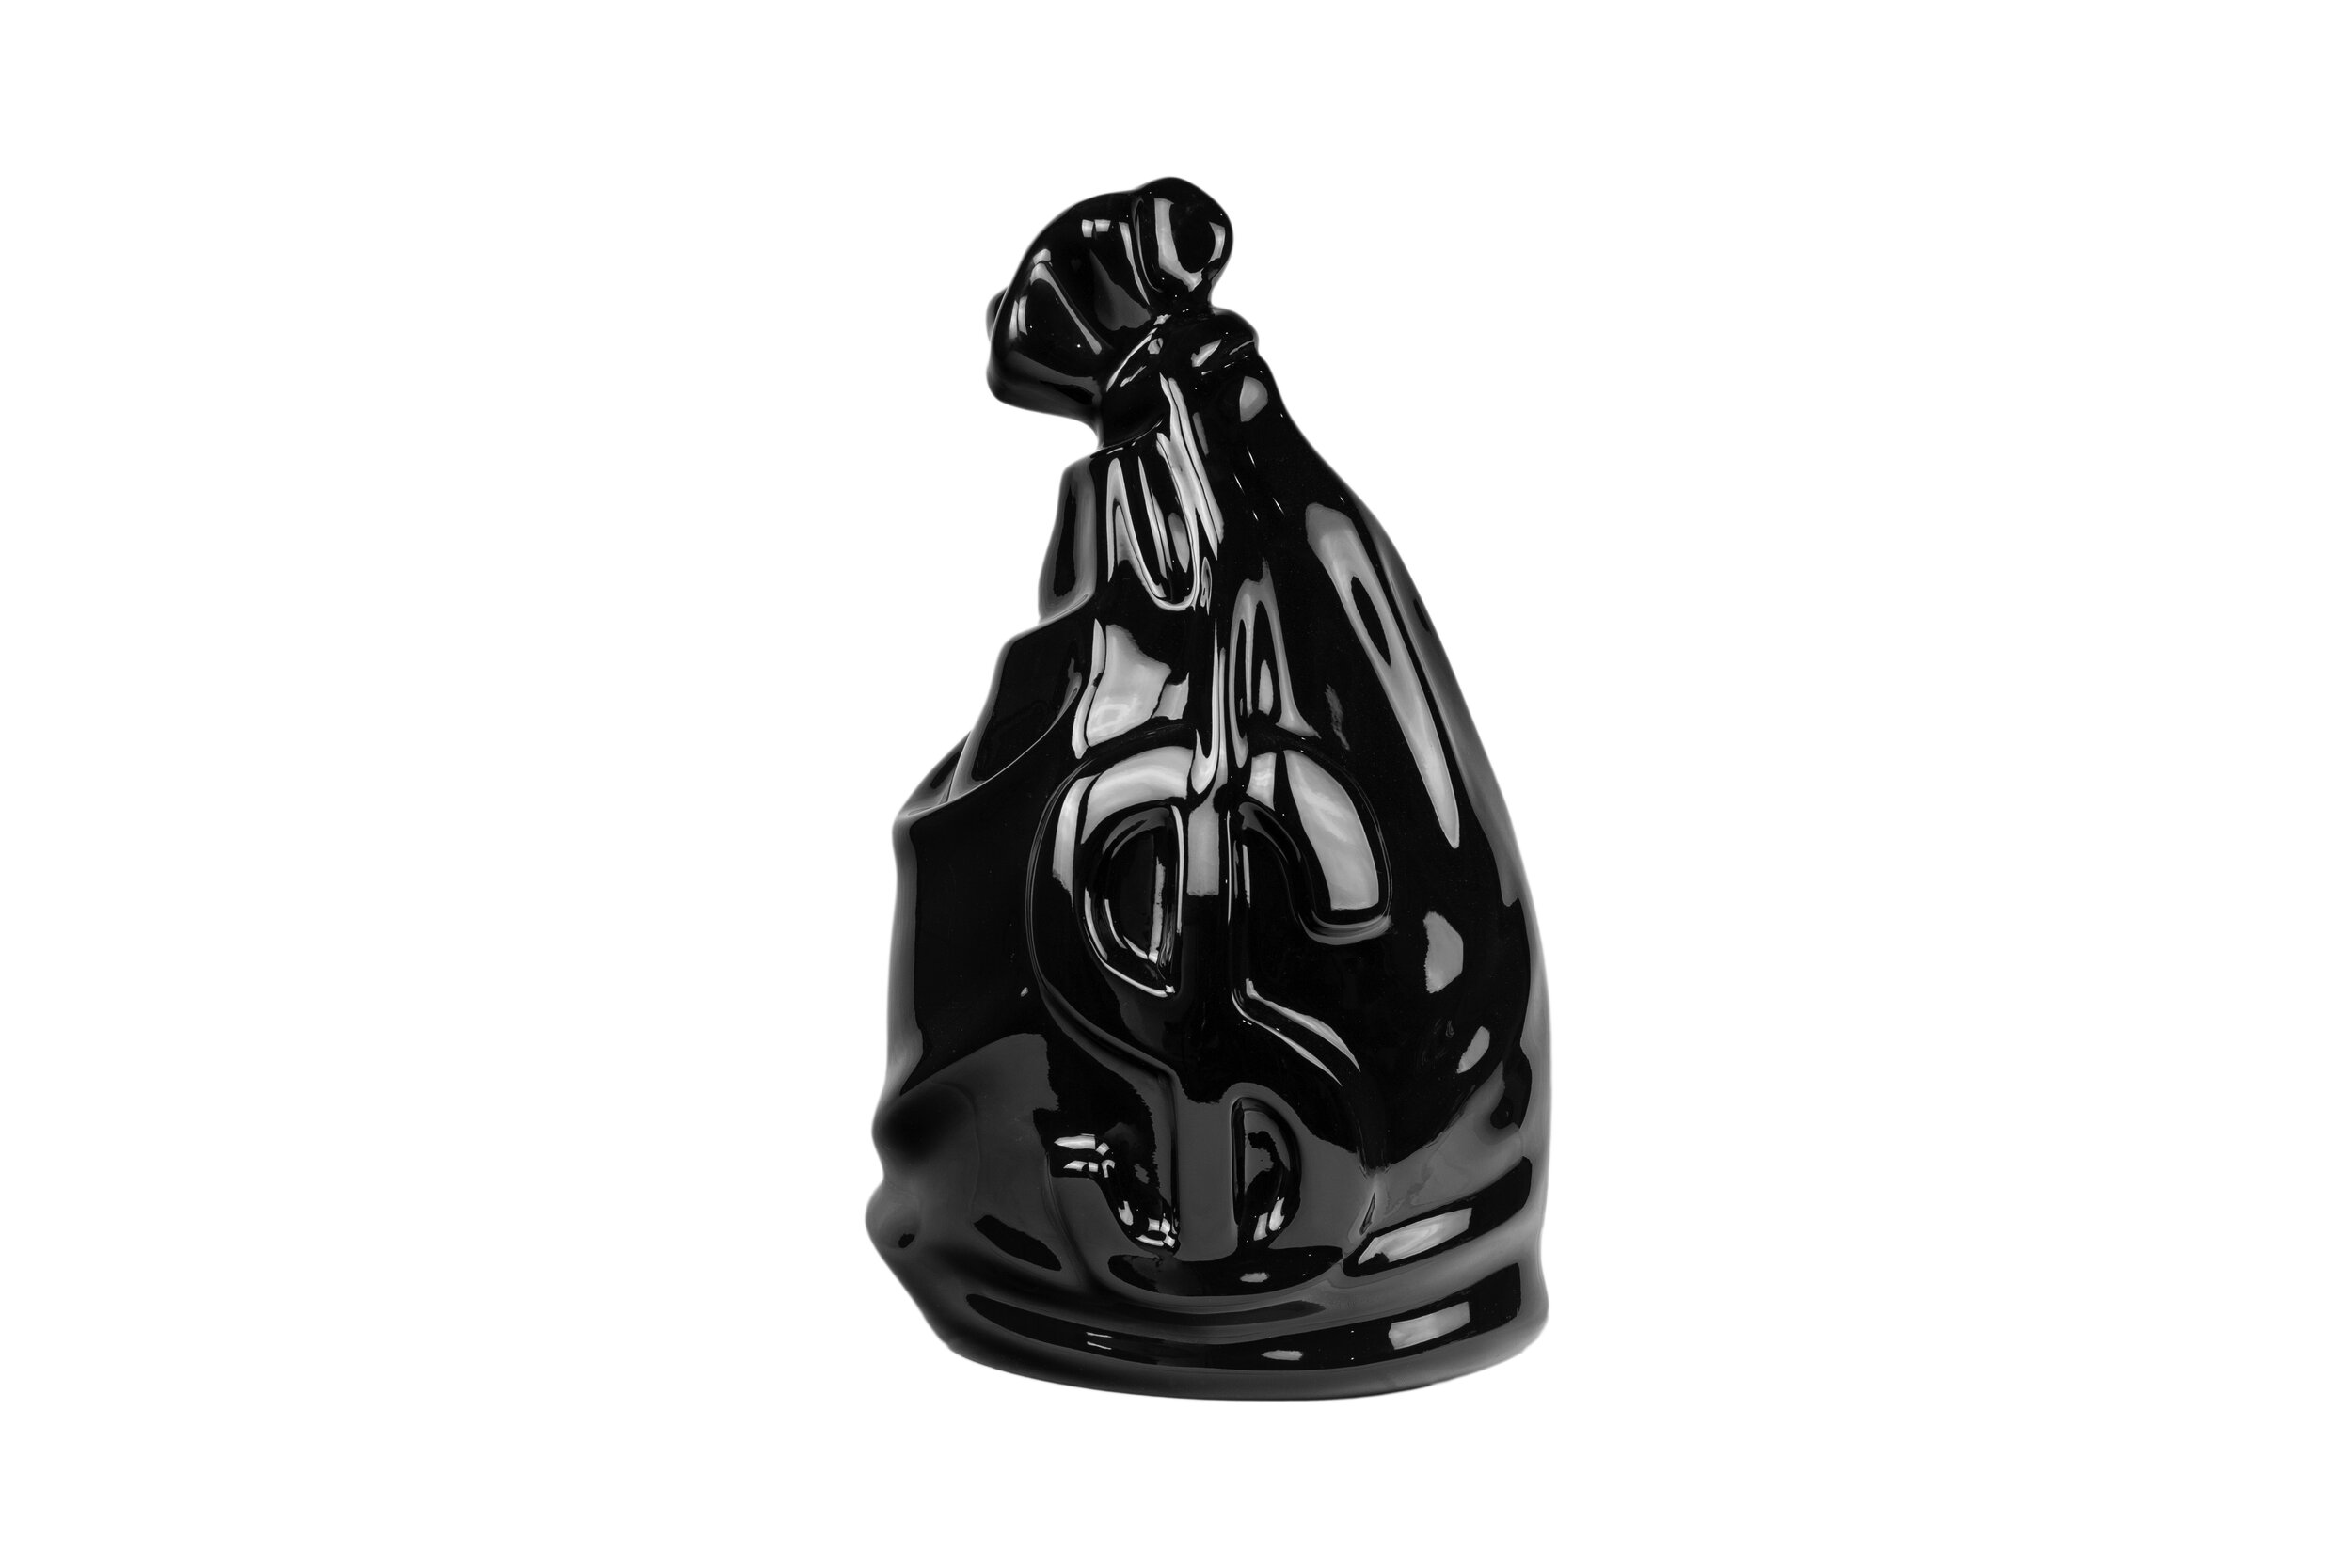 moneybag-sculpture-black-2020.jpg